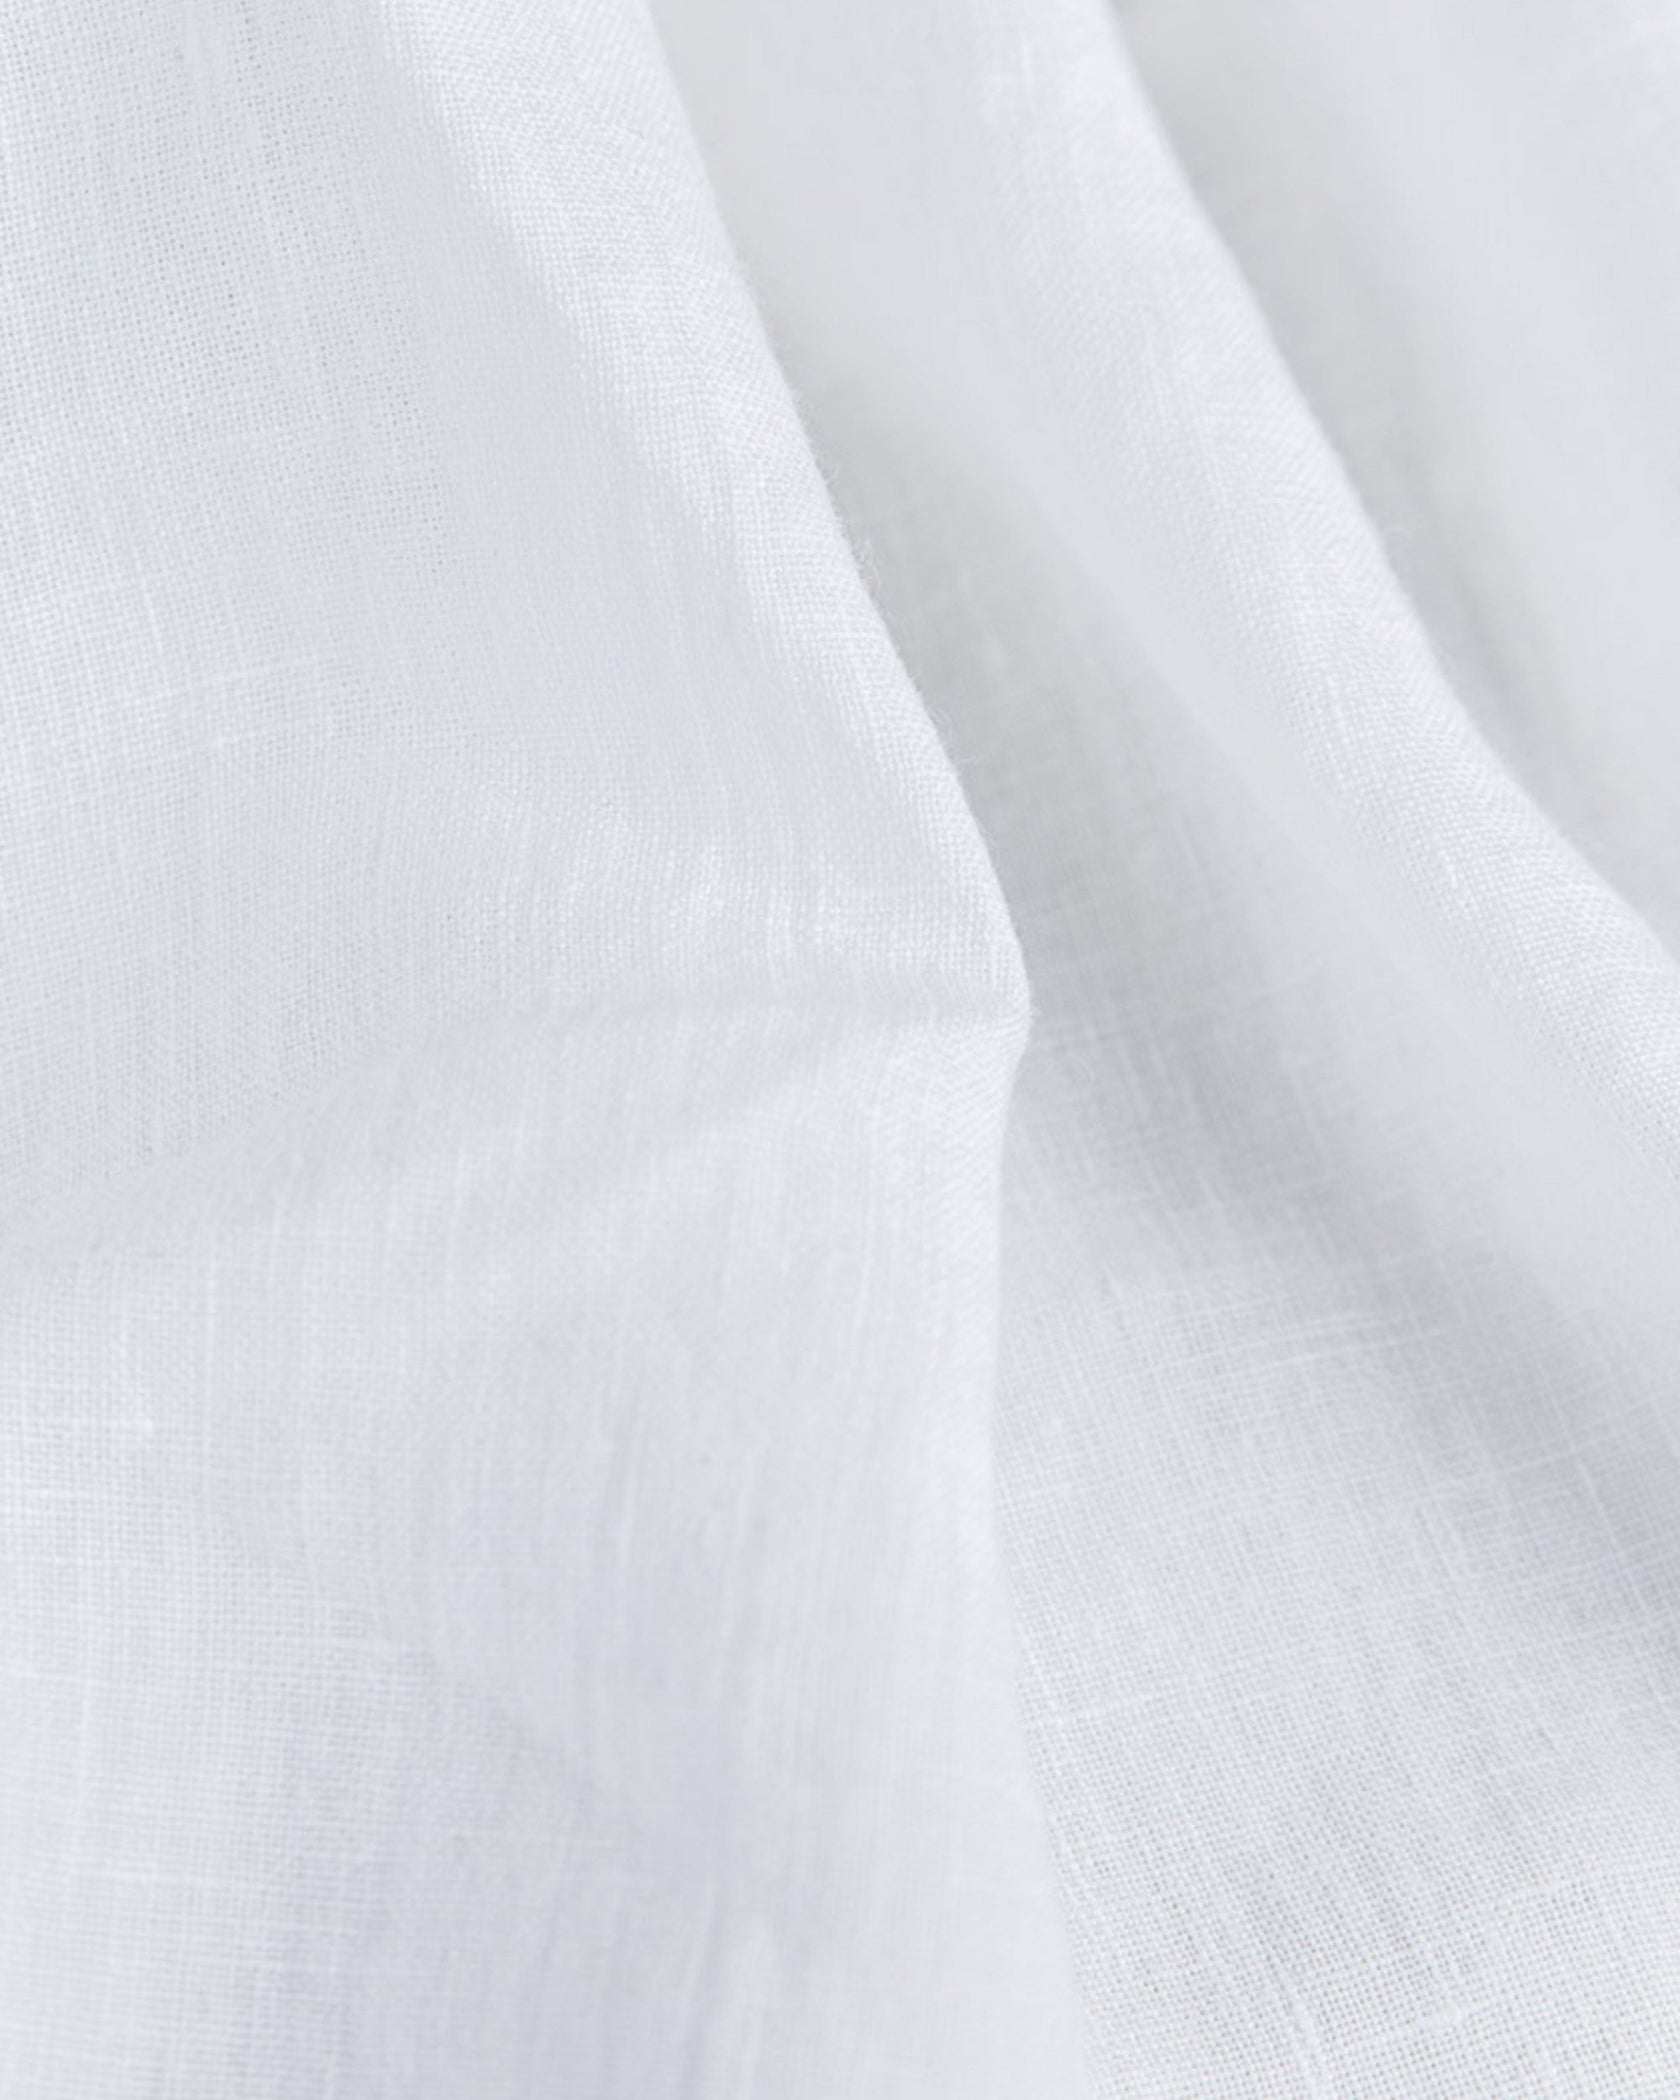 White Linen Sheet Set | MagicLinen